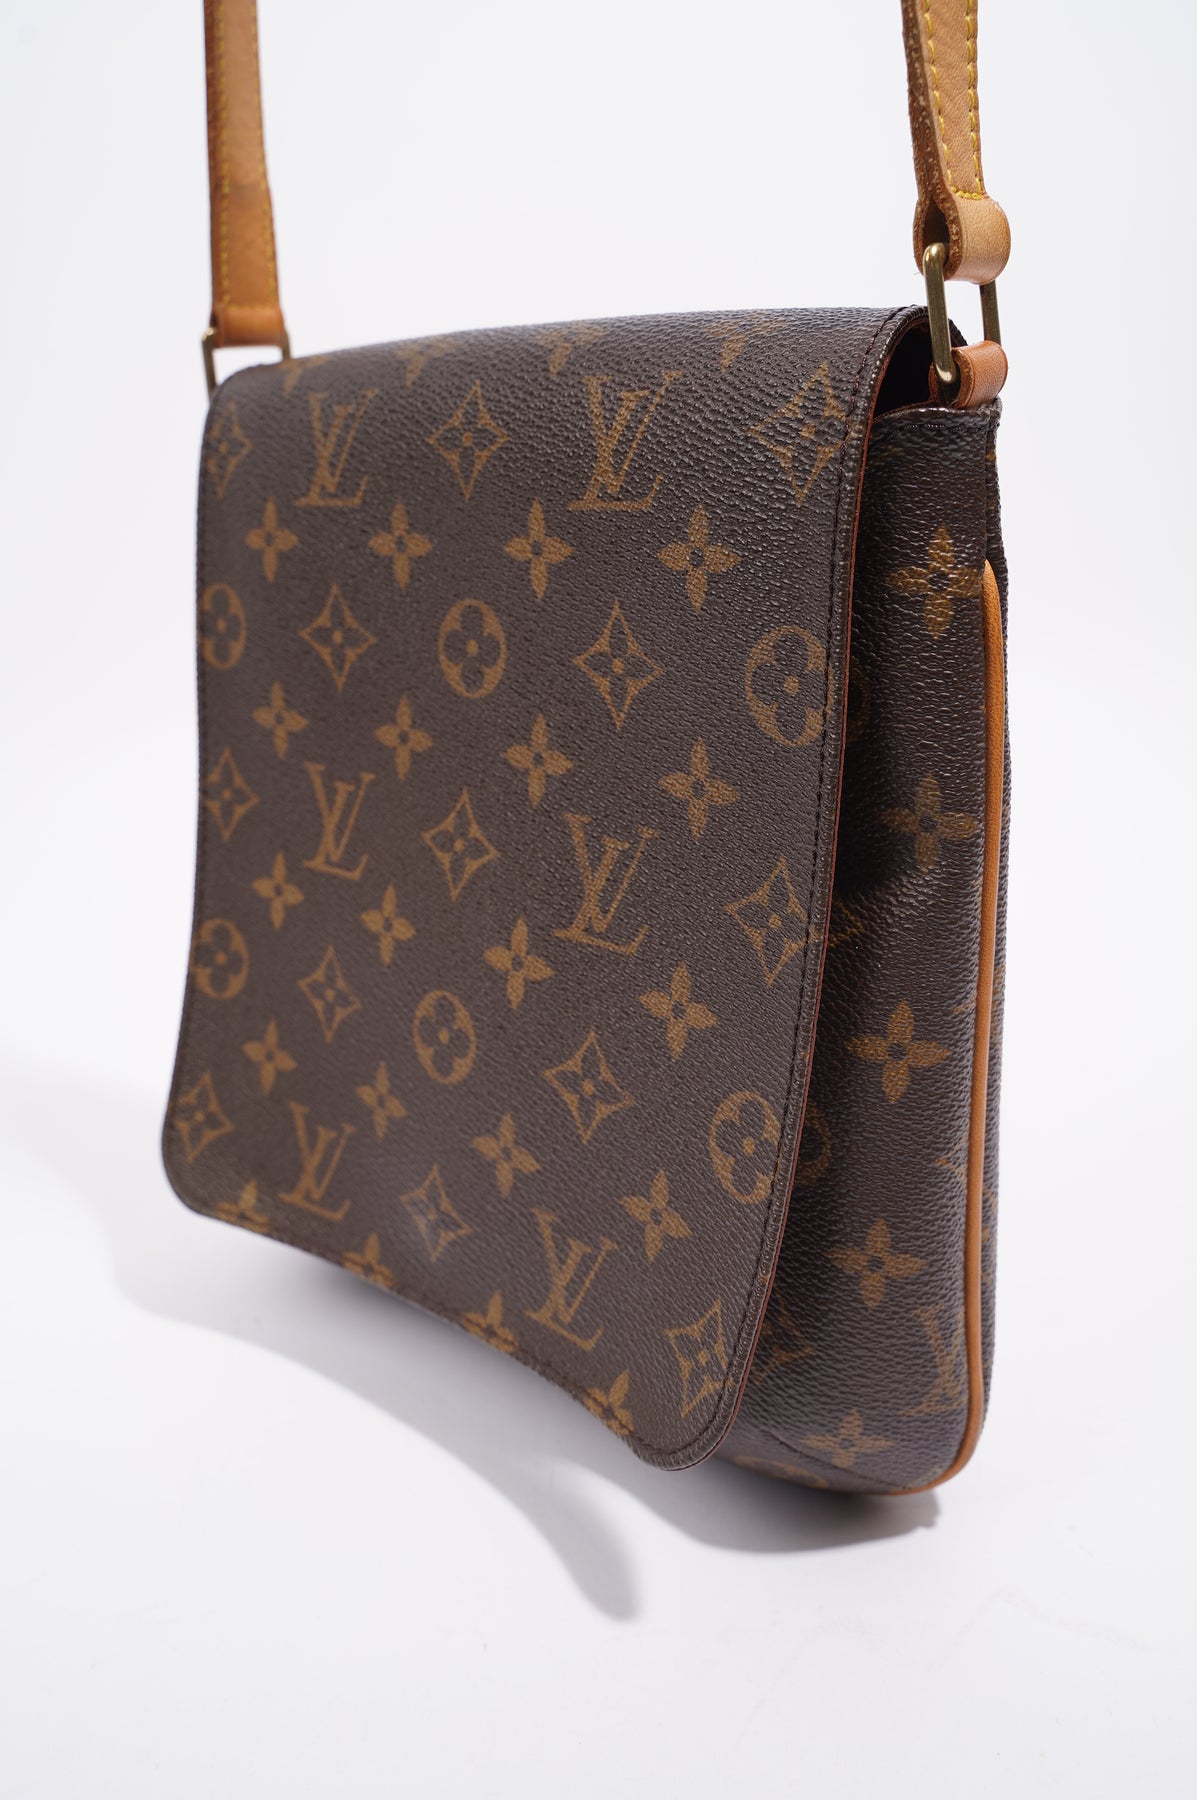 Louis Vuitton Vintage Monogram Leather Cross Body Bag Purse  Etsy  Vintage  louis vuitton Monogrammed leather Louis vuitton